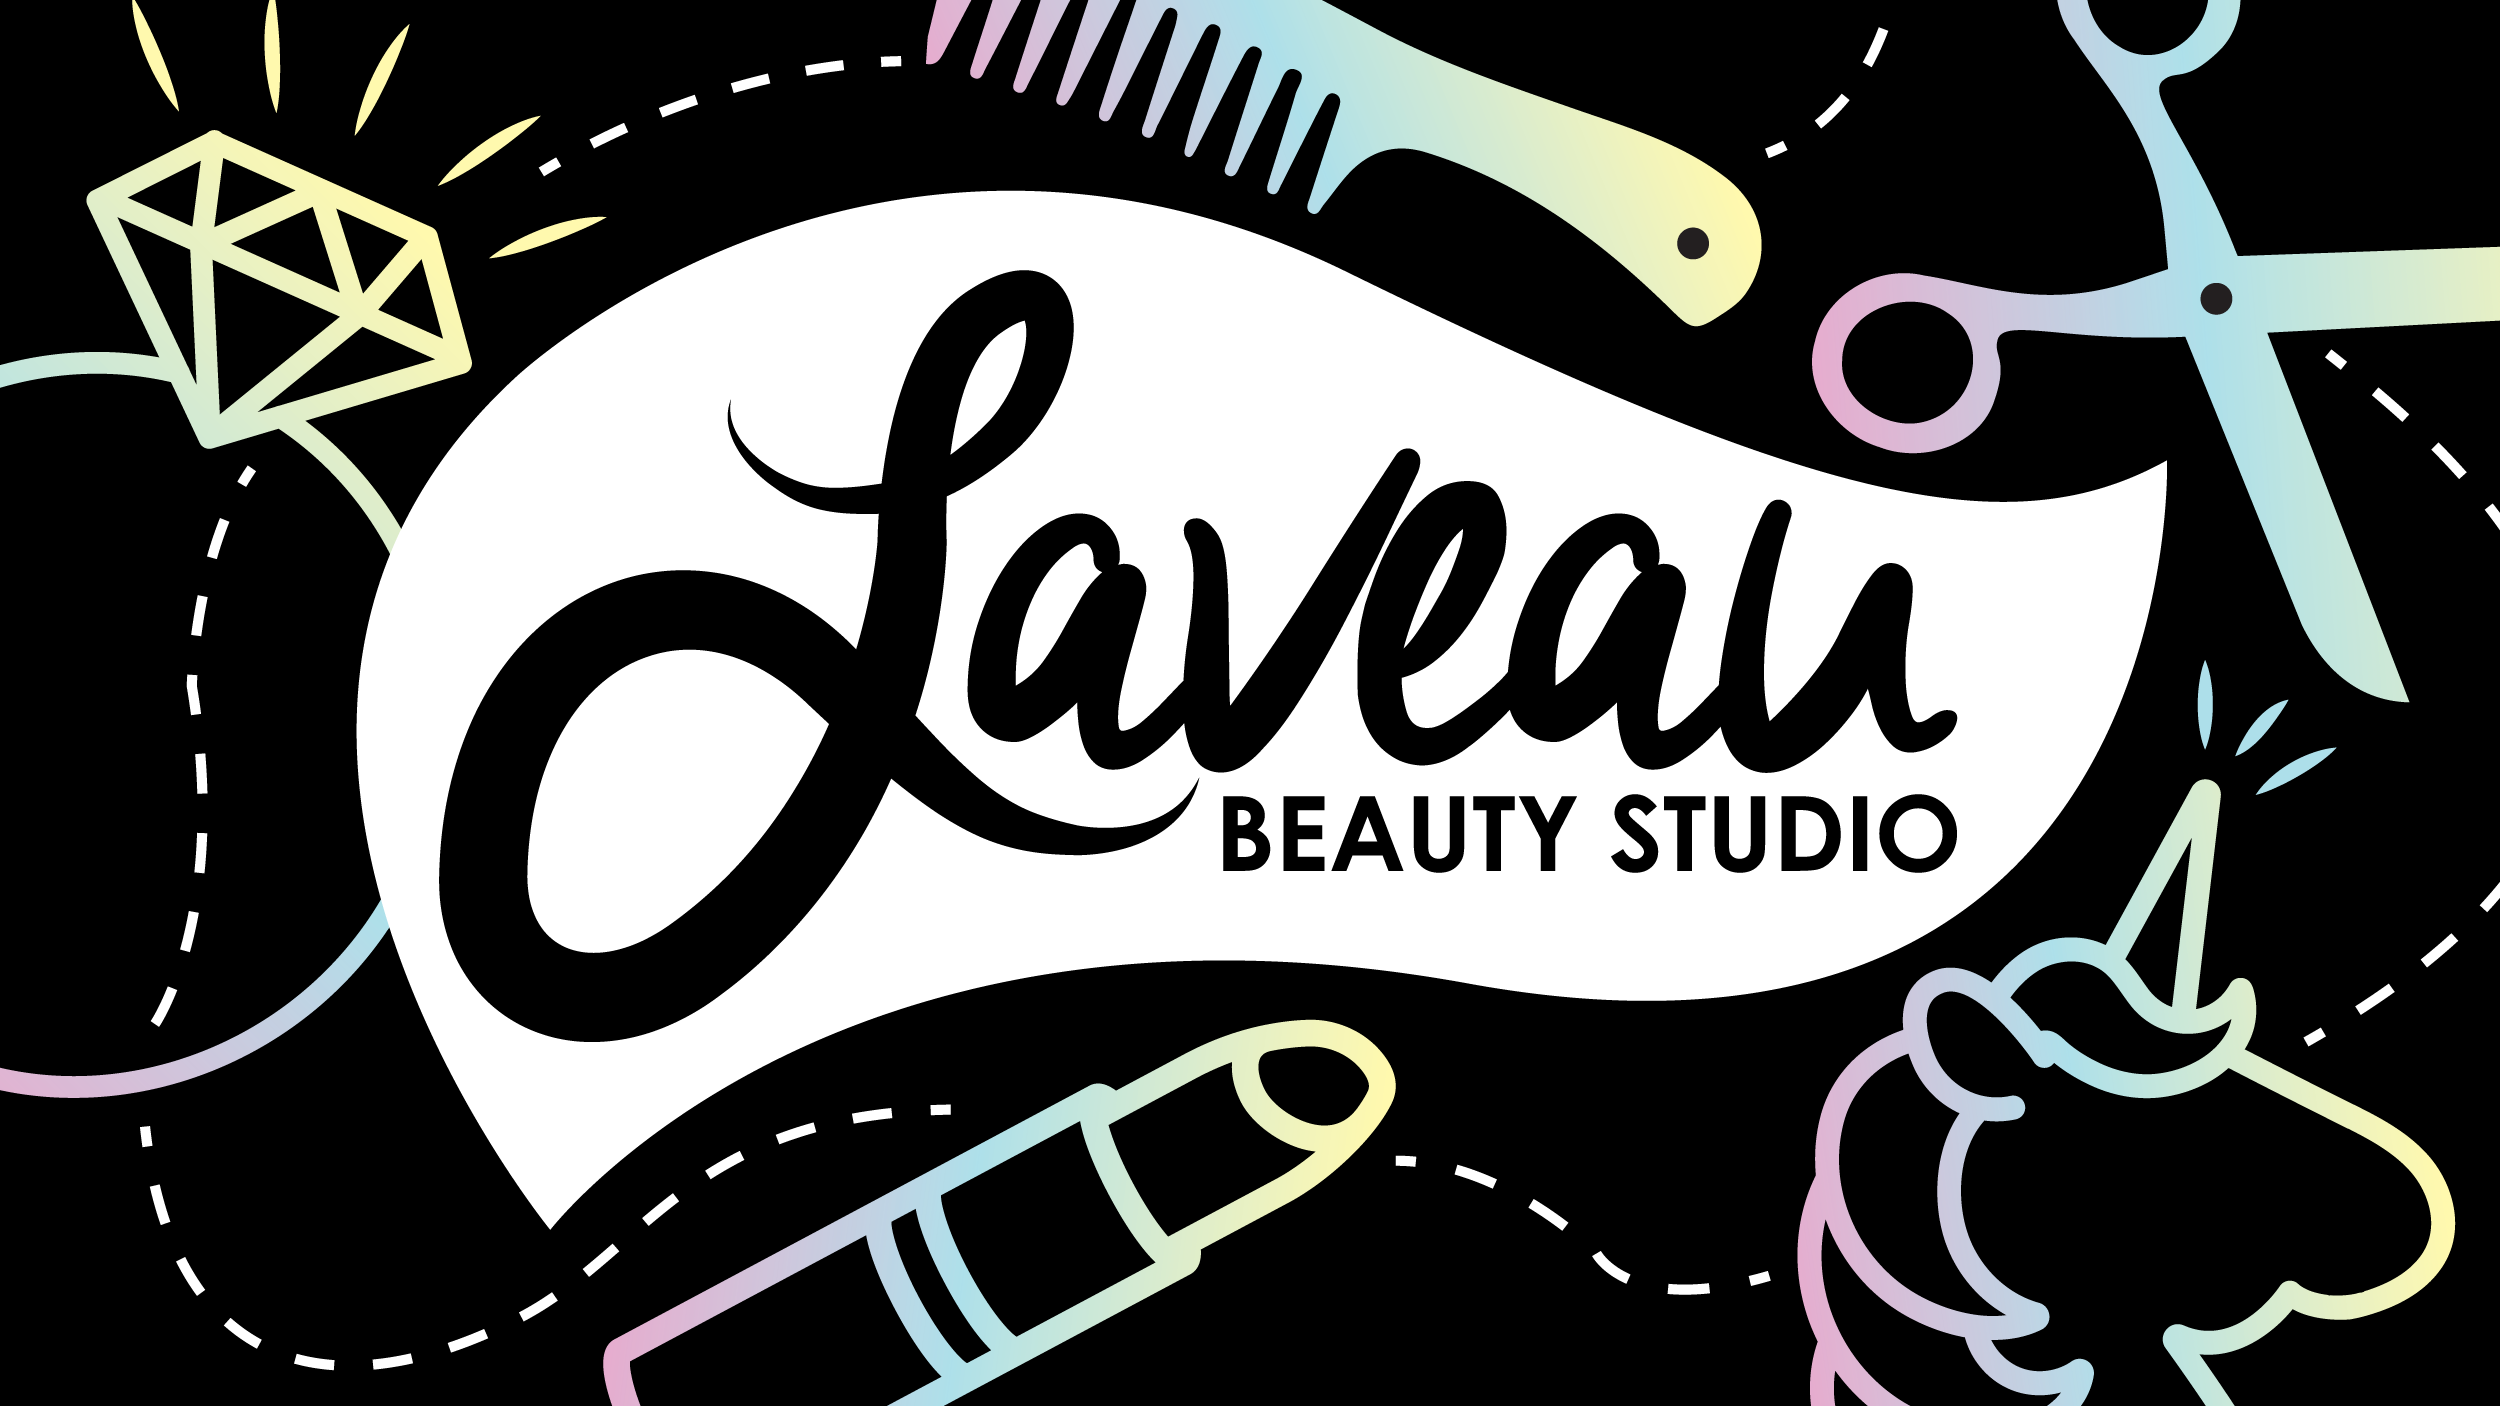 Laveau-Beauty-Studio_Branding_Dreamcapture_Memphis-TN ..